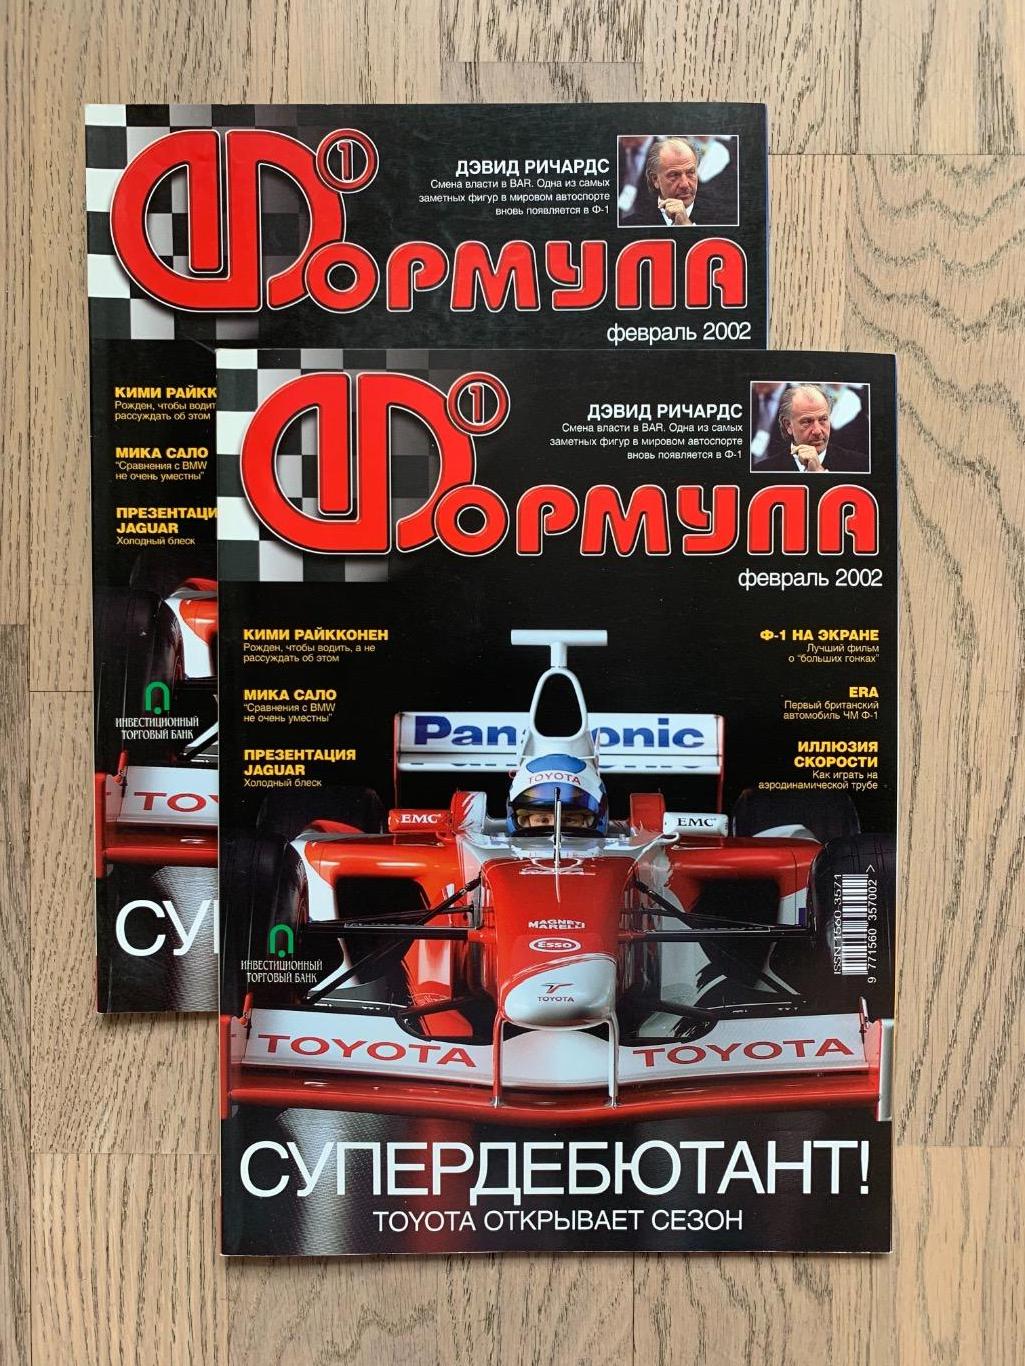 Журнал Формула 1 (Formula Magazine) / февраль 2002 2